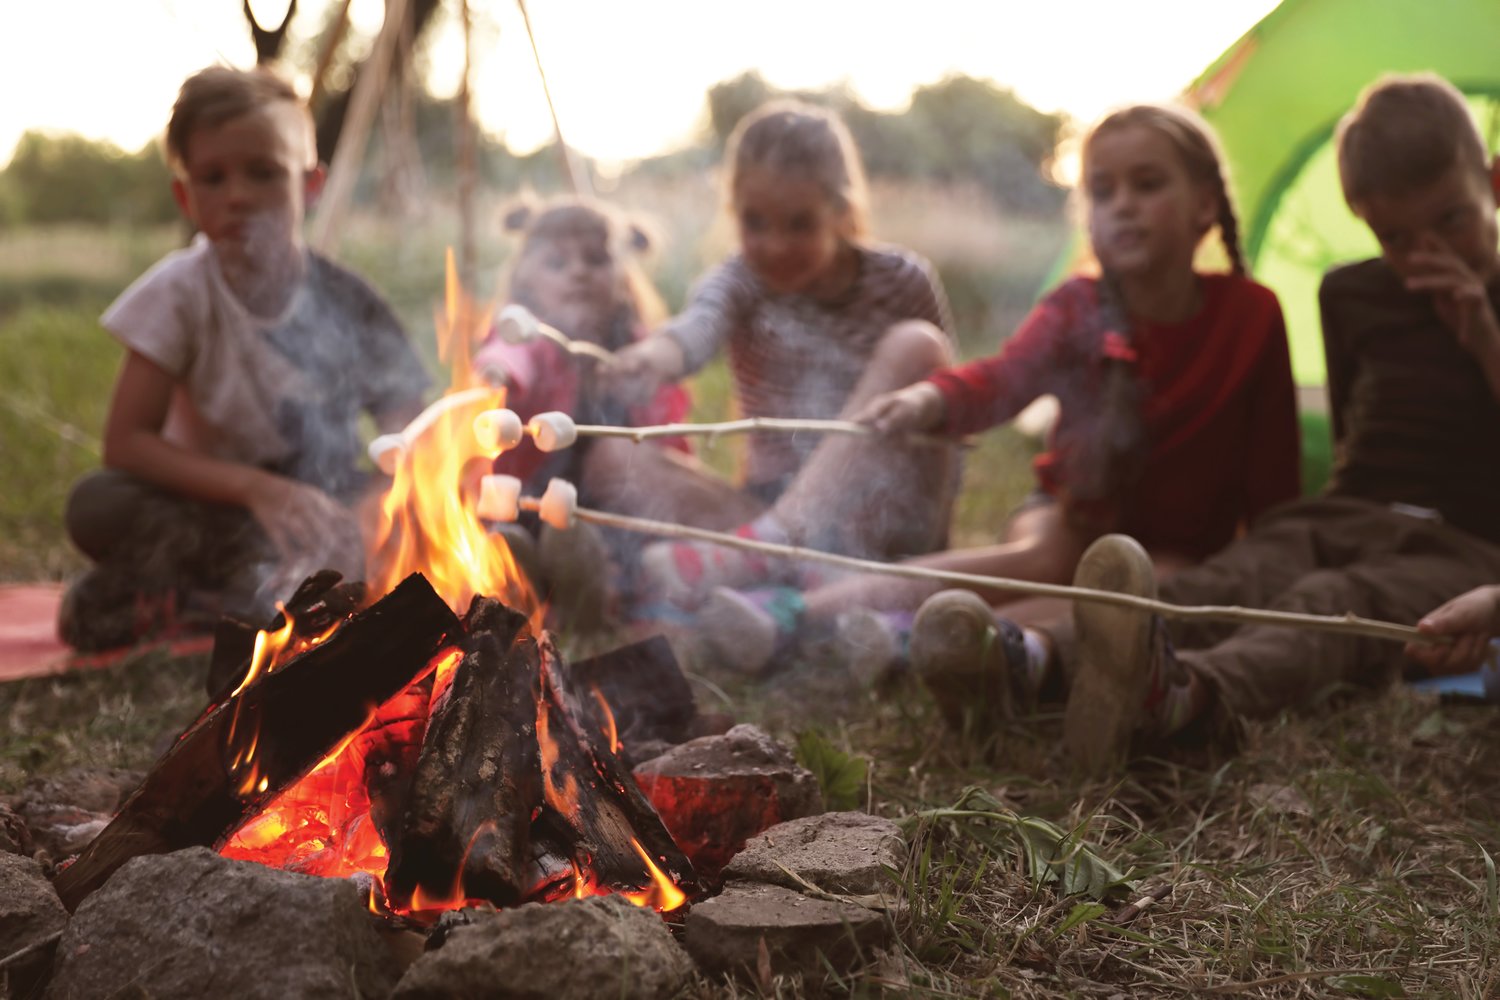 Little children frying marshmallows on bonfire.